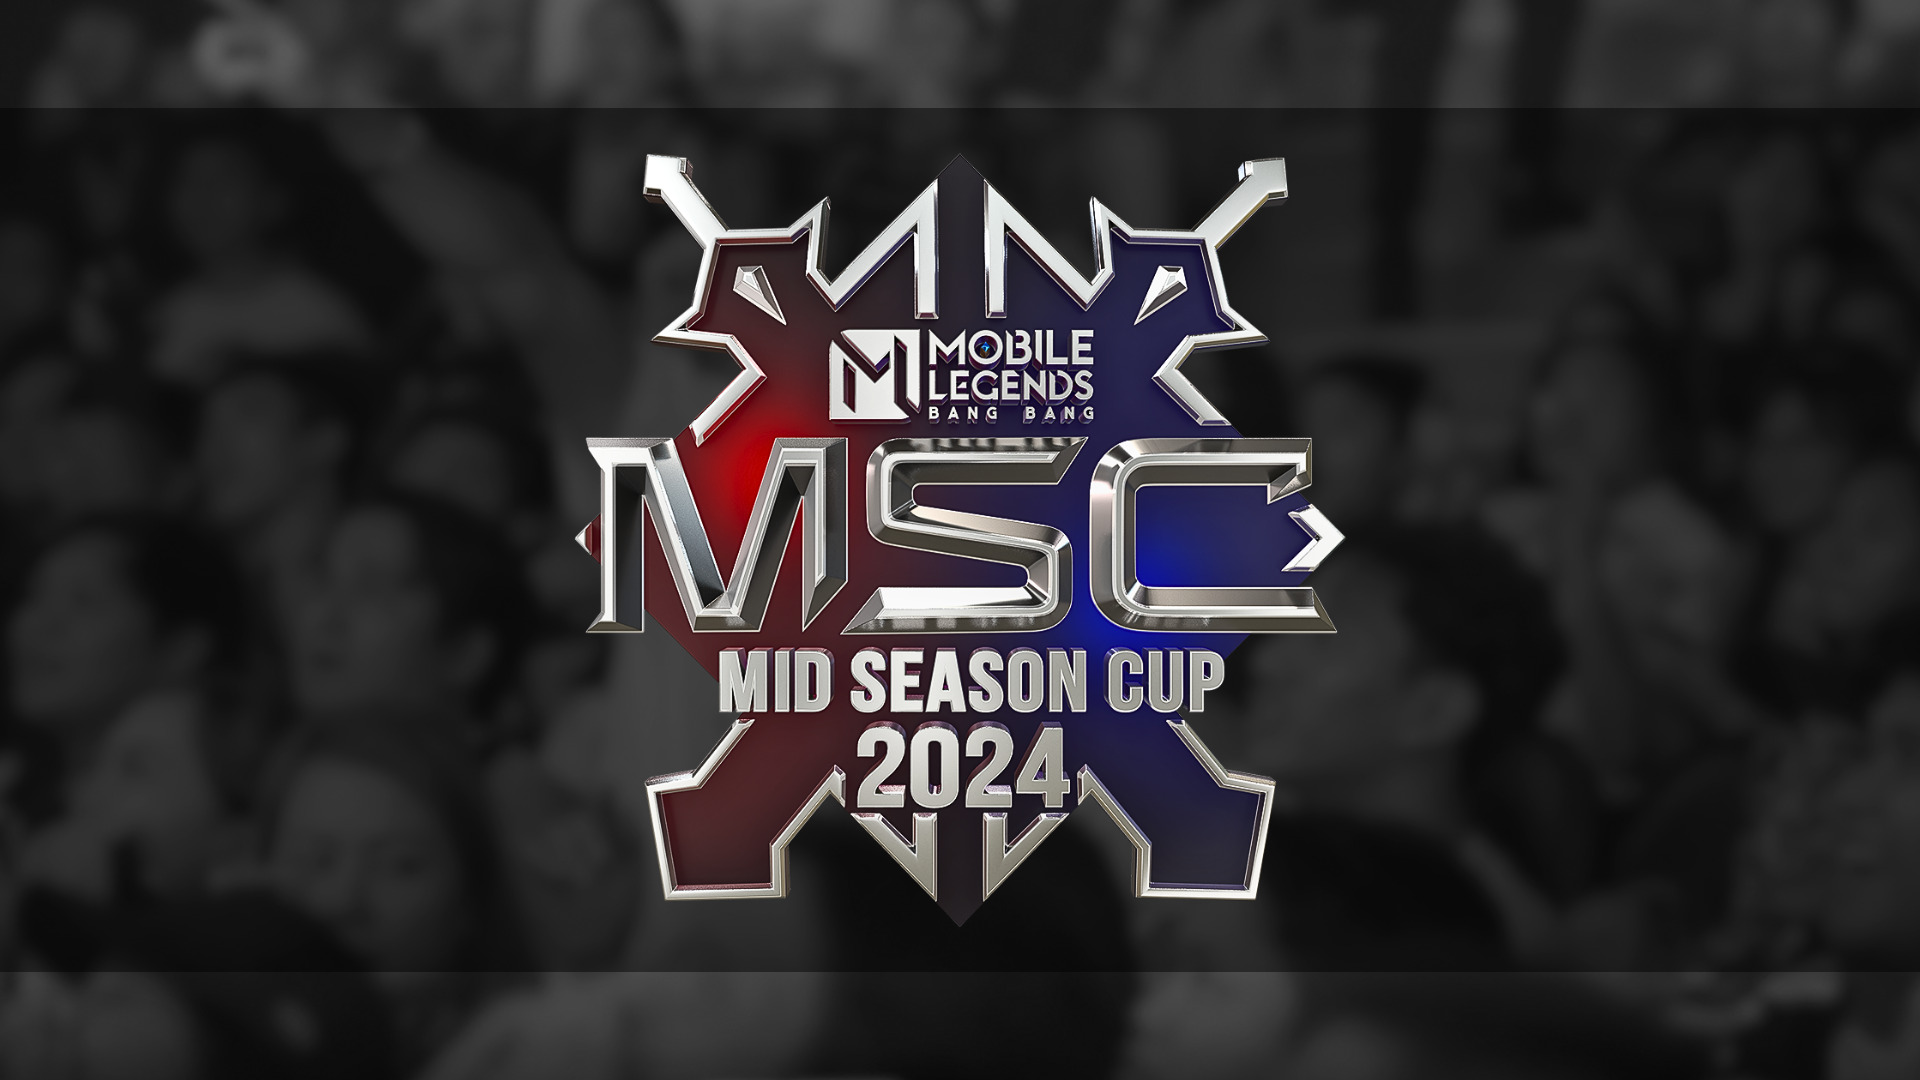 Jadwal MSC 2024 Mobile Legends Lengkap dengan Format dan Daftar Tim